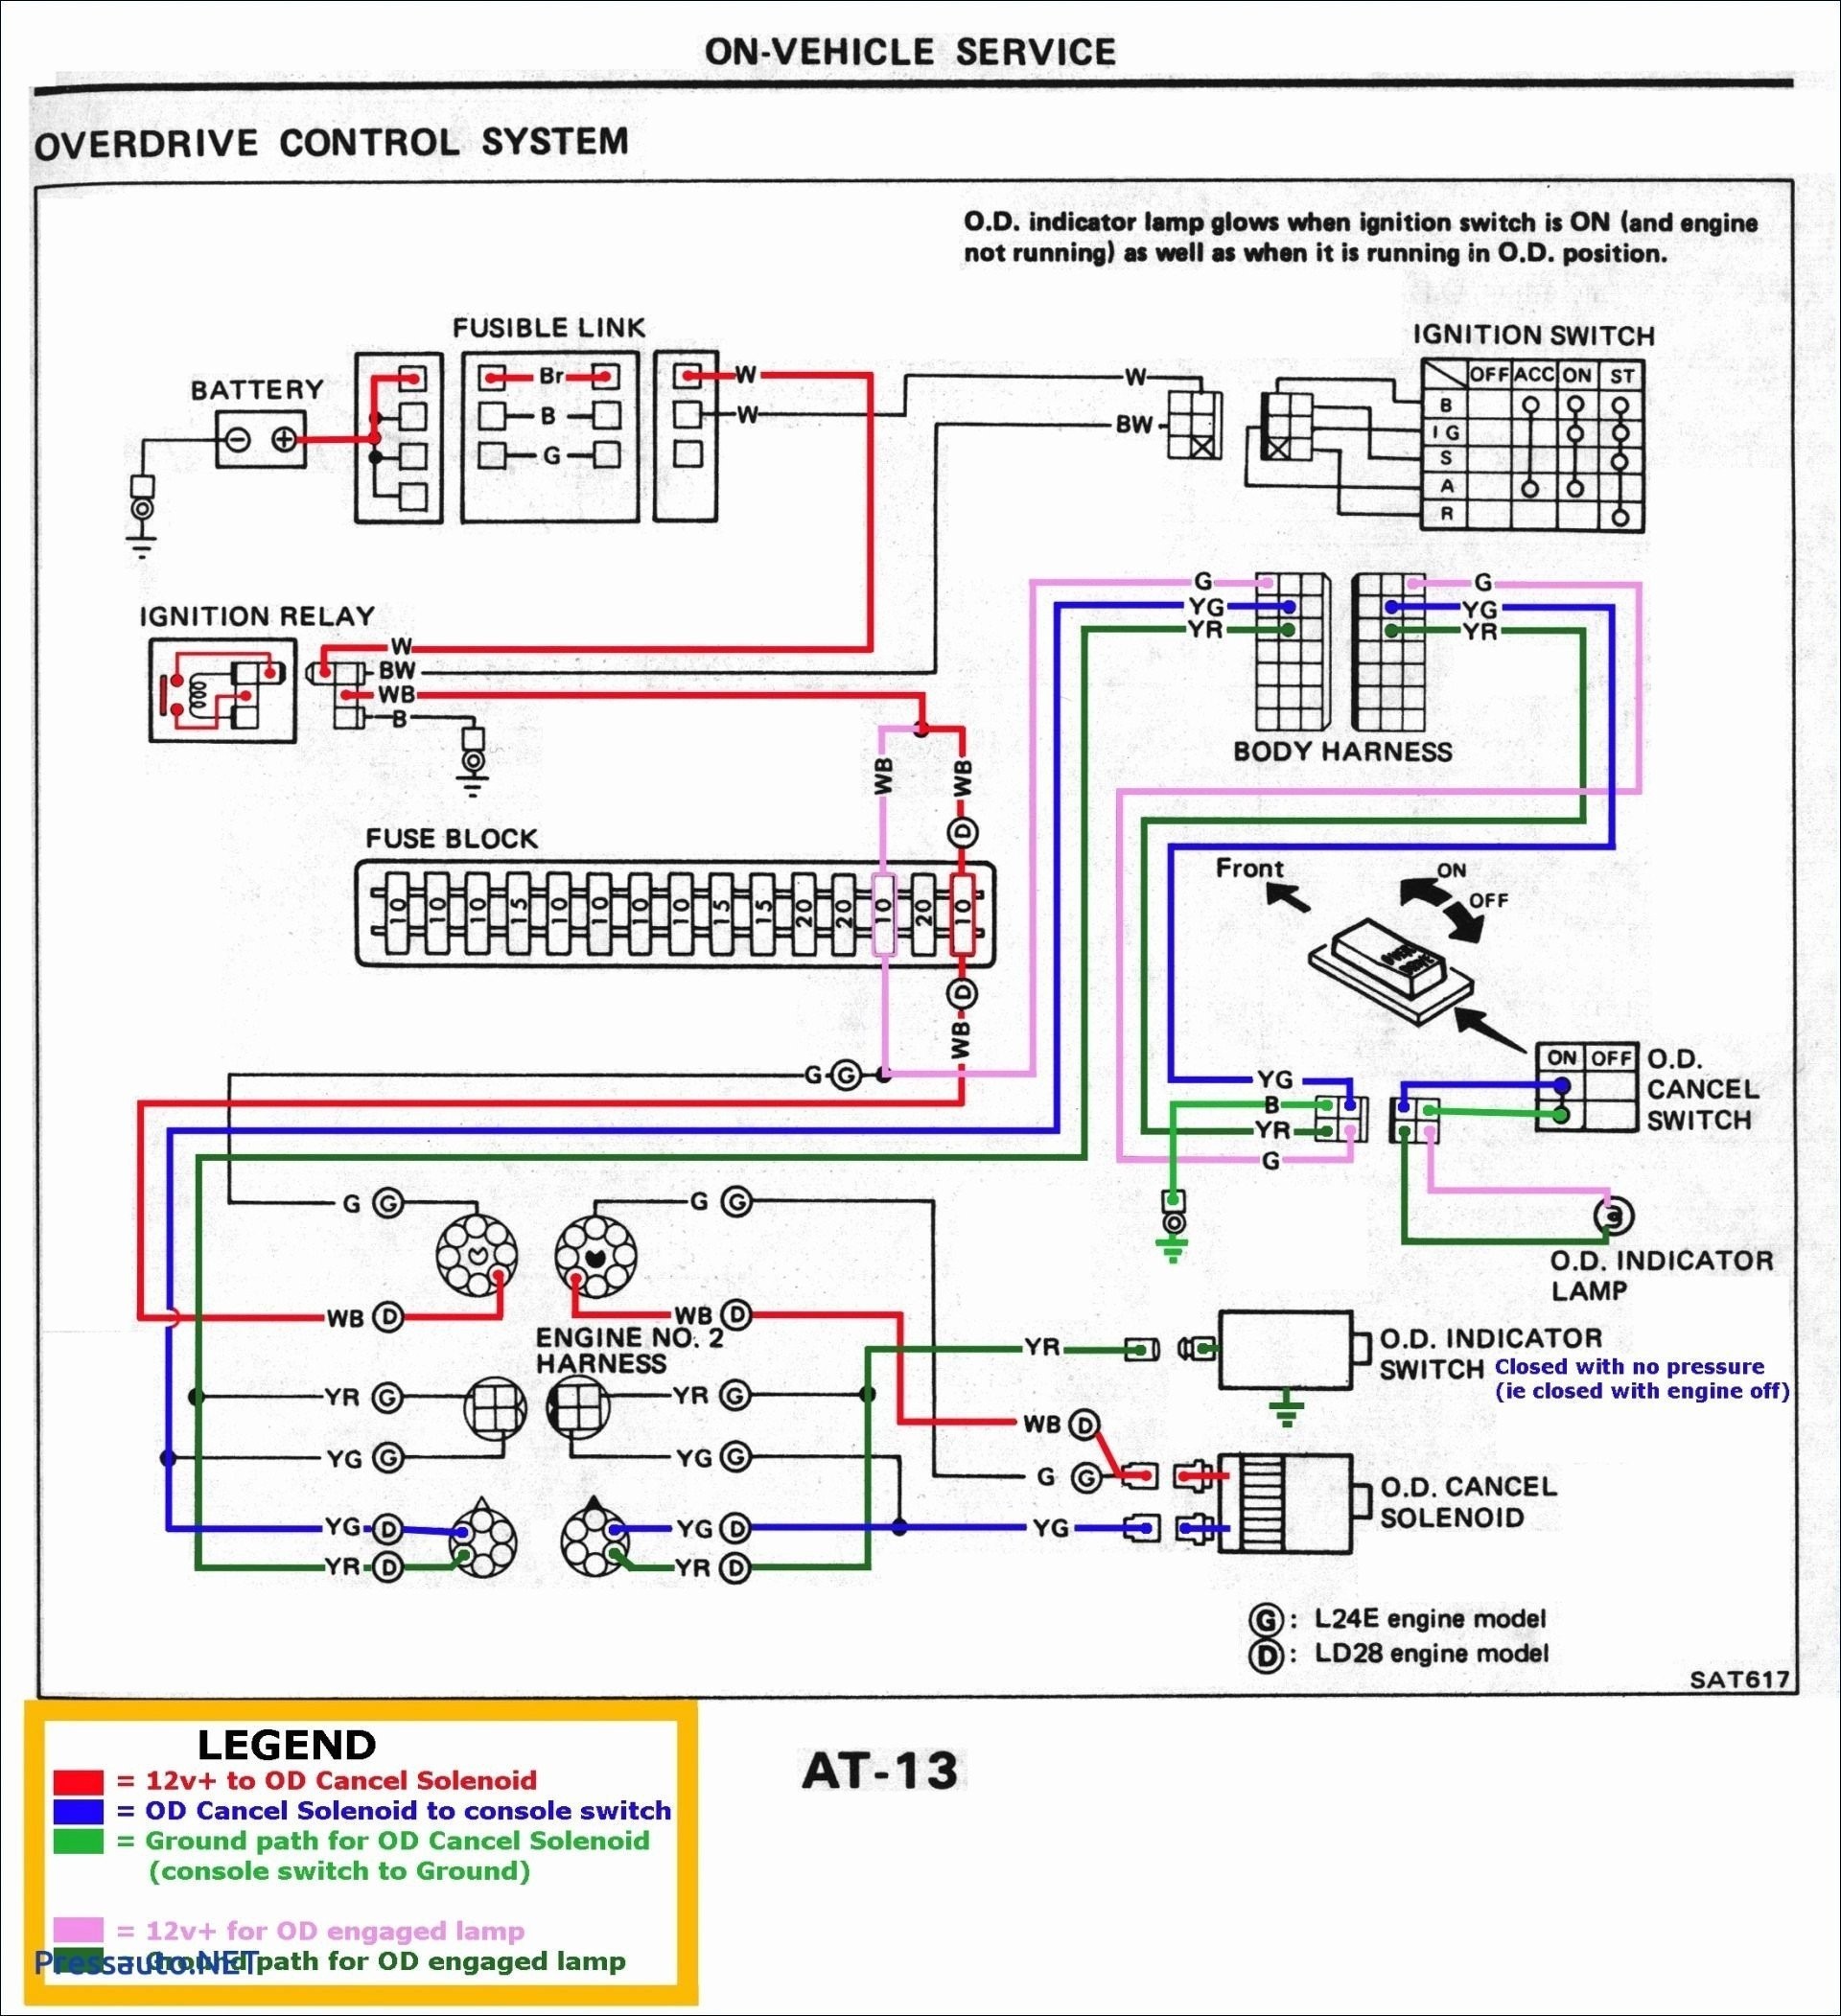 2002 Chevy Cavalier Engine Diagram 9e2 Jeep Wrangler Engine Wiring for 2000 Of 2002 Chevy Cavalier Engine Diagram